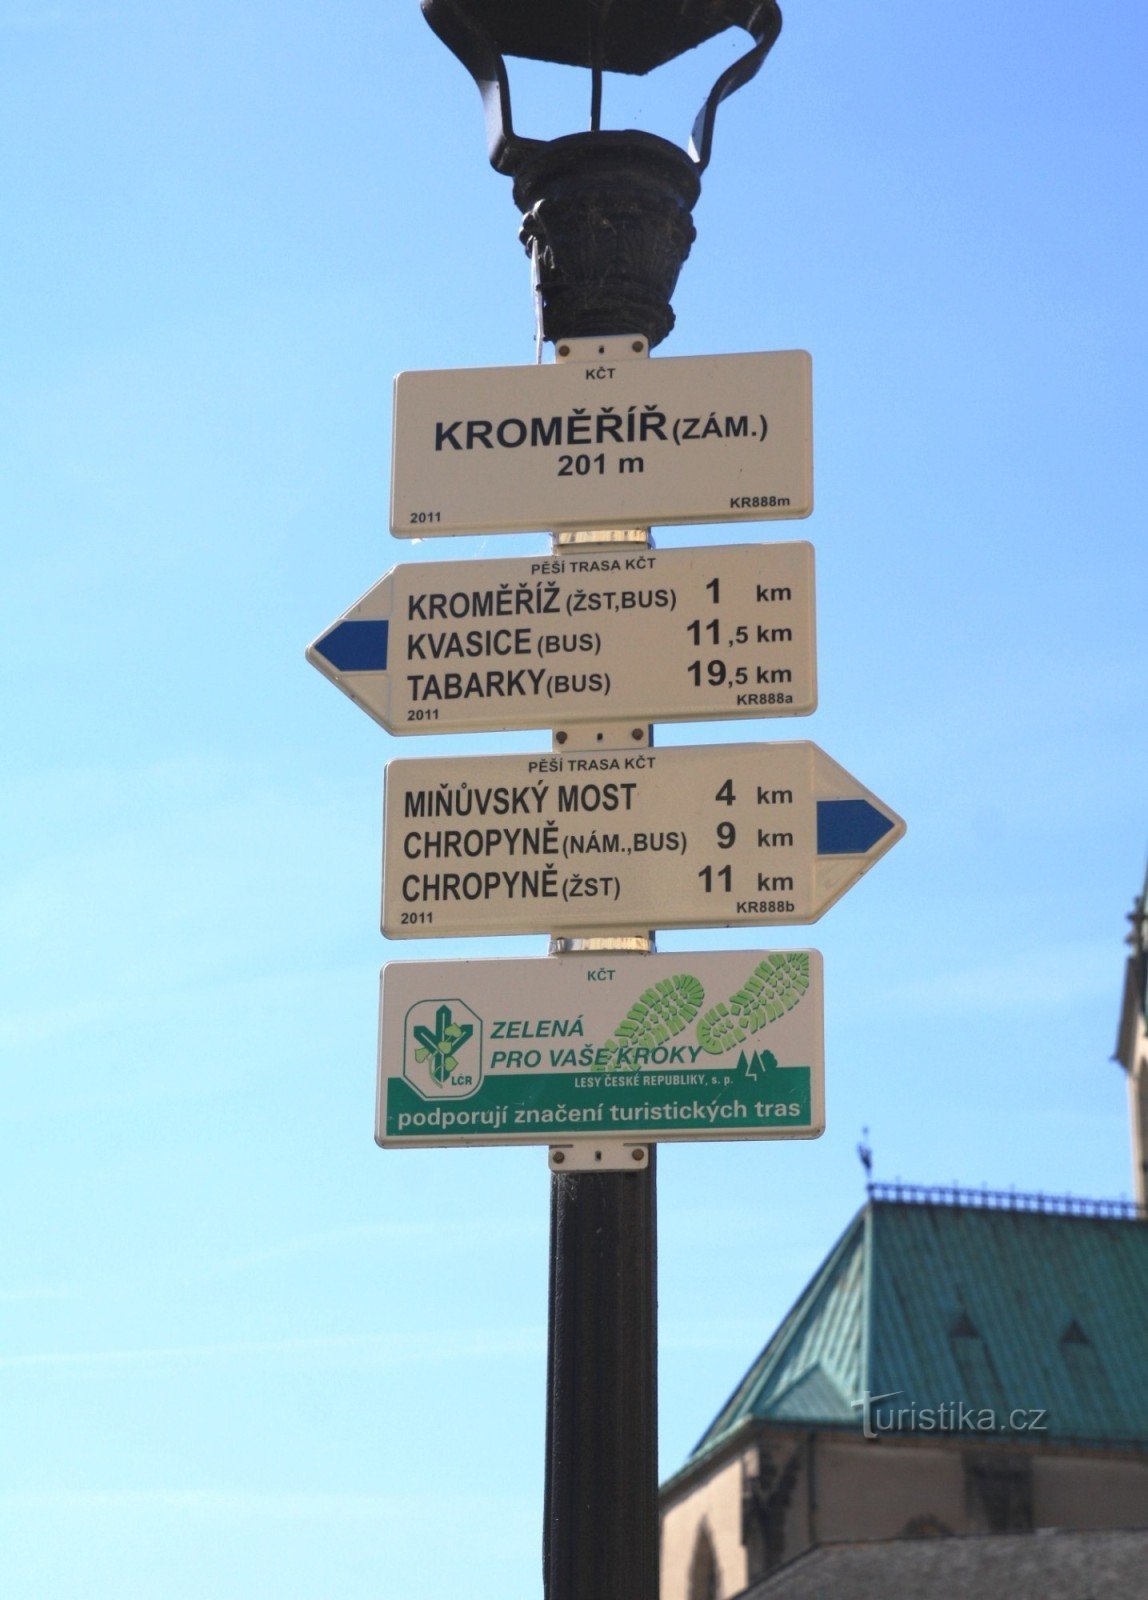 Kroměříž castle tourist crossroads